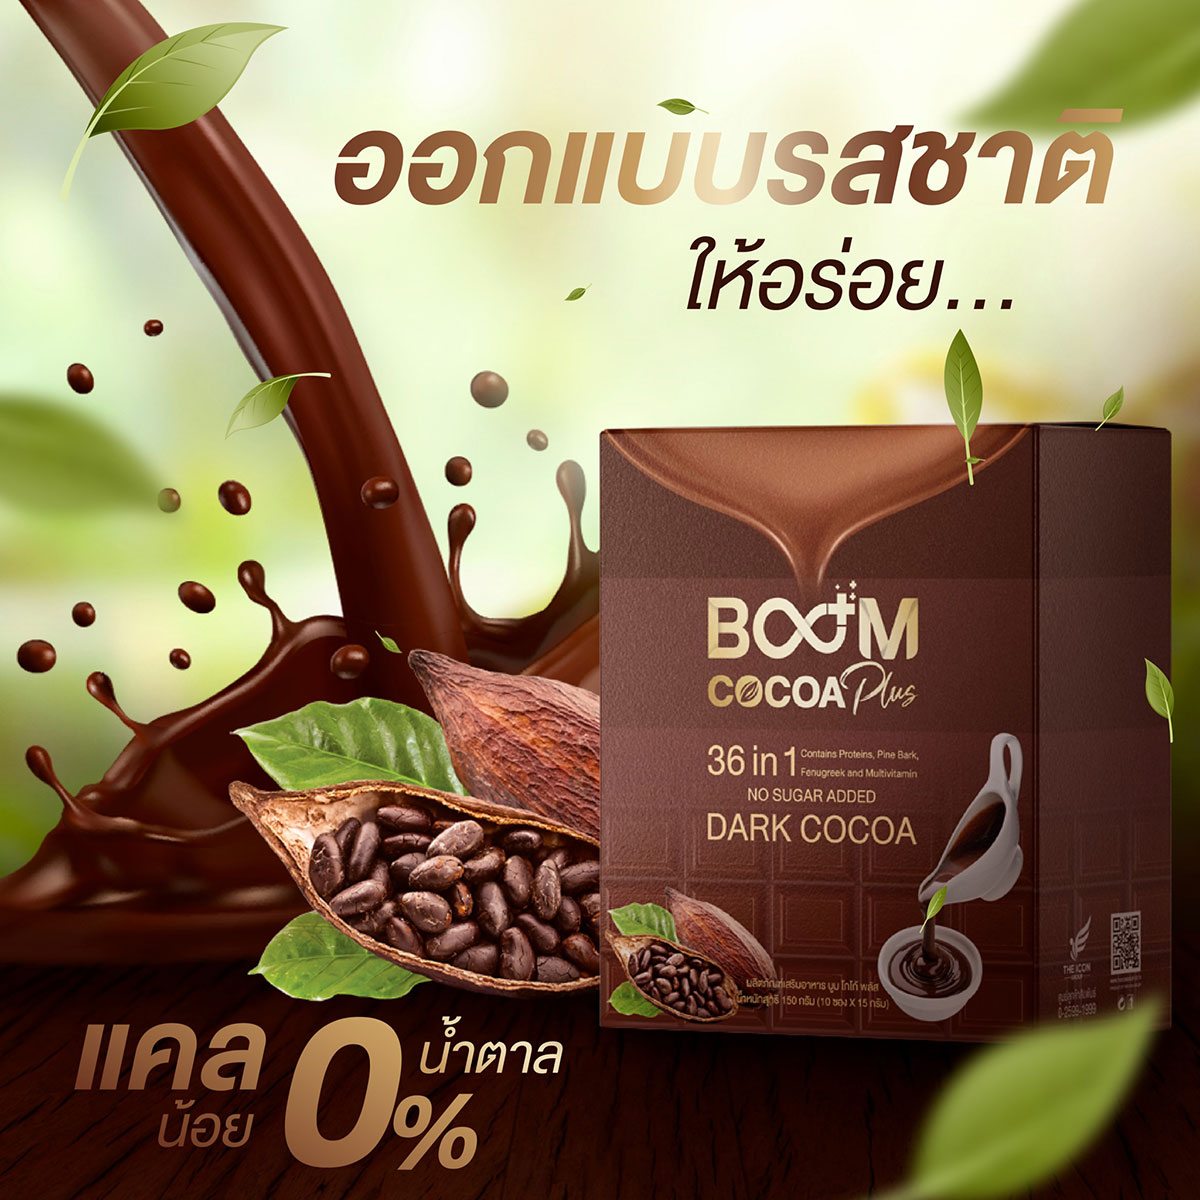 Boom Cocoa Plus โกโก้ที่ออกแบบรสชาติมาให้อร่อย